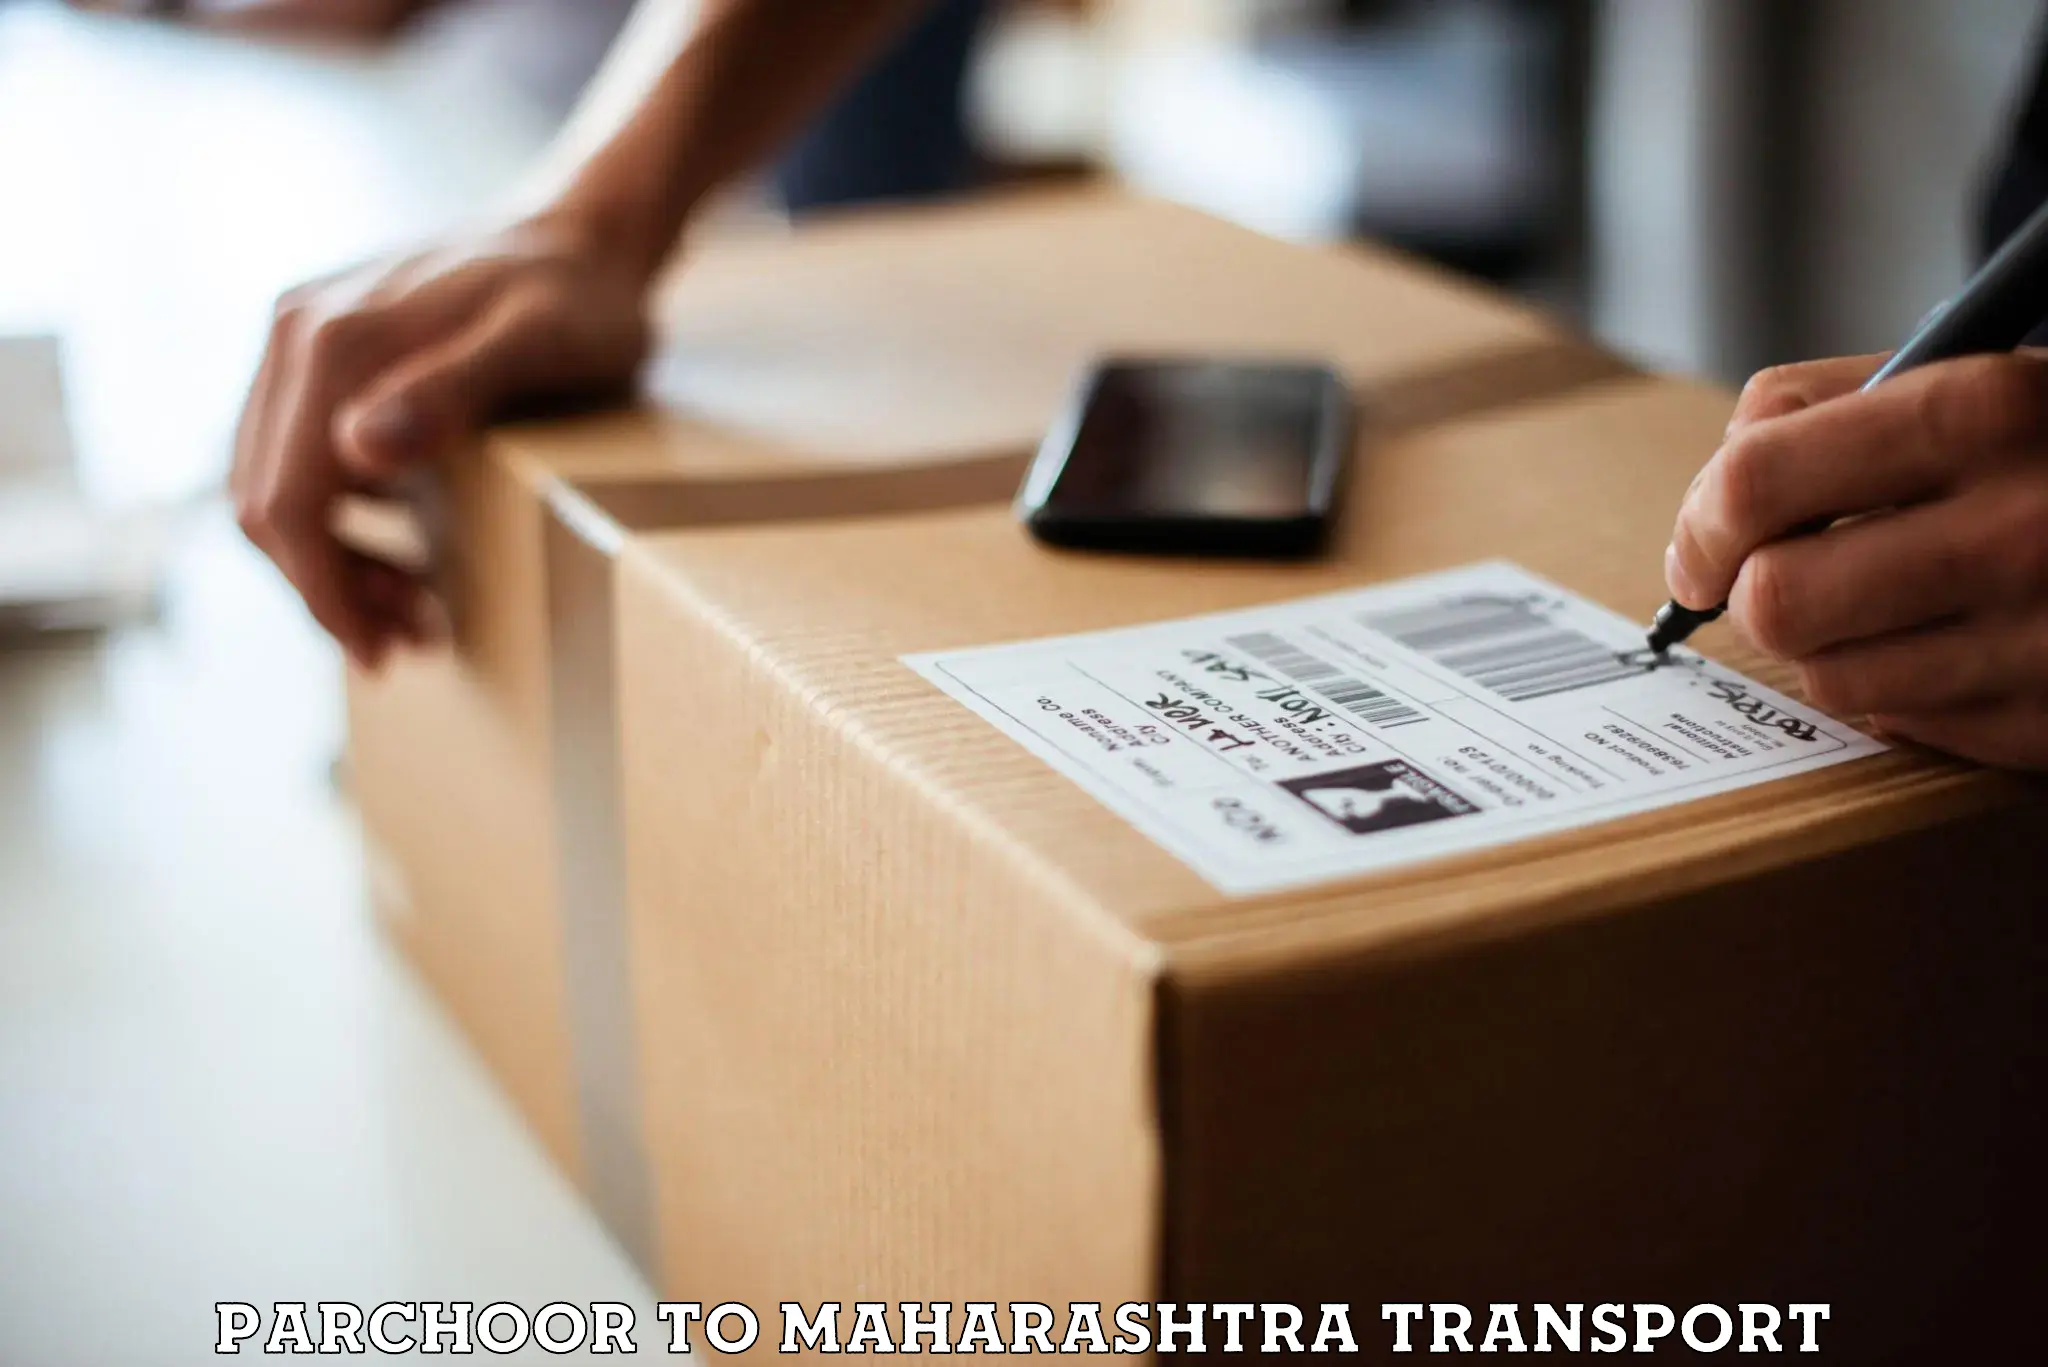 Vehicle parcel service Parchoor to Alibag